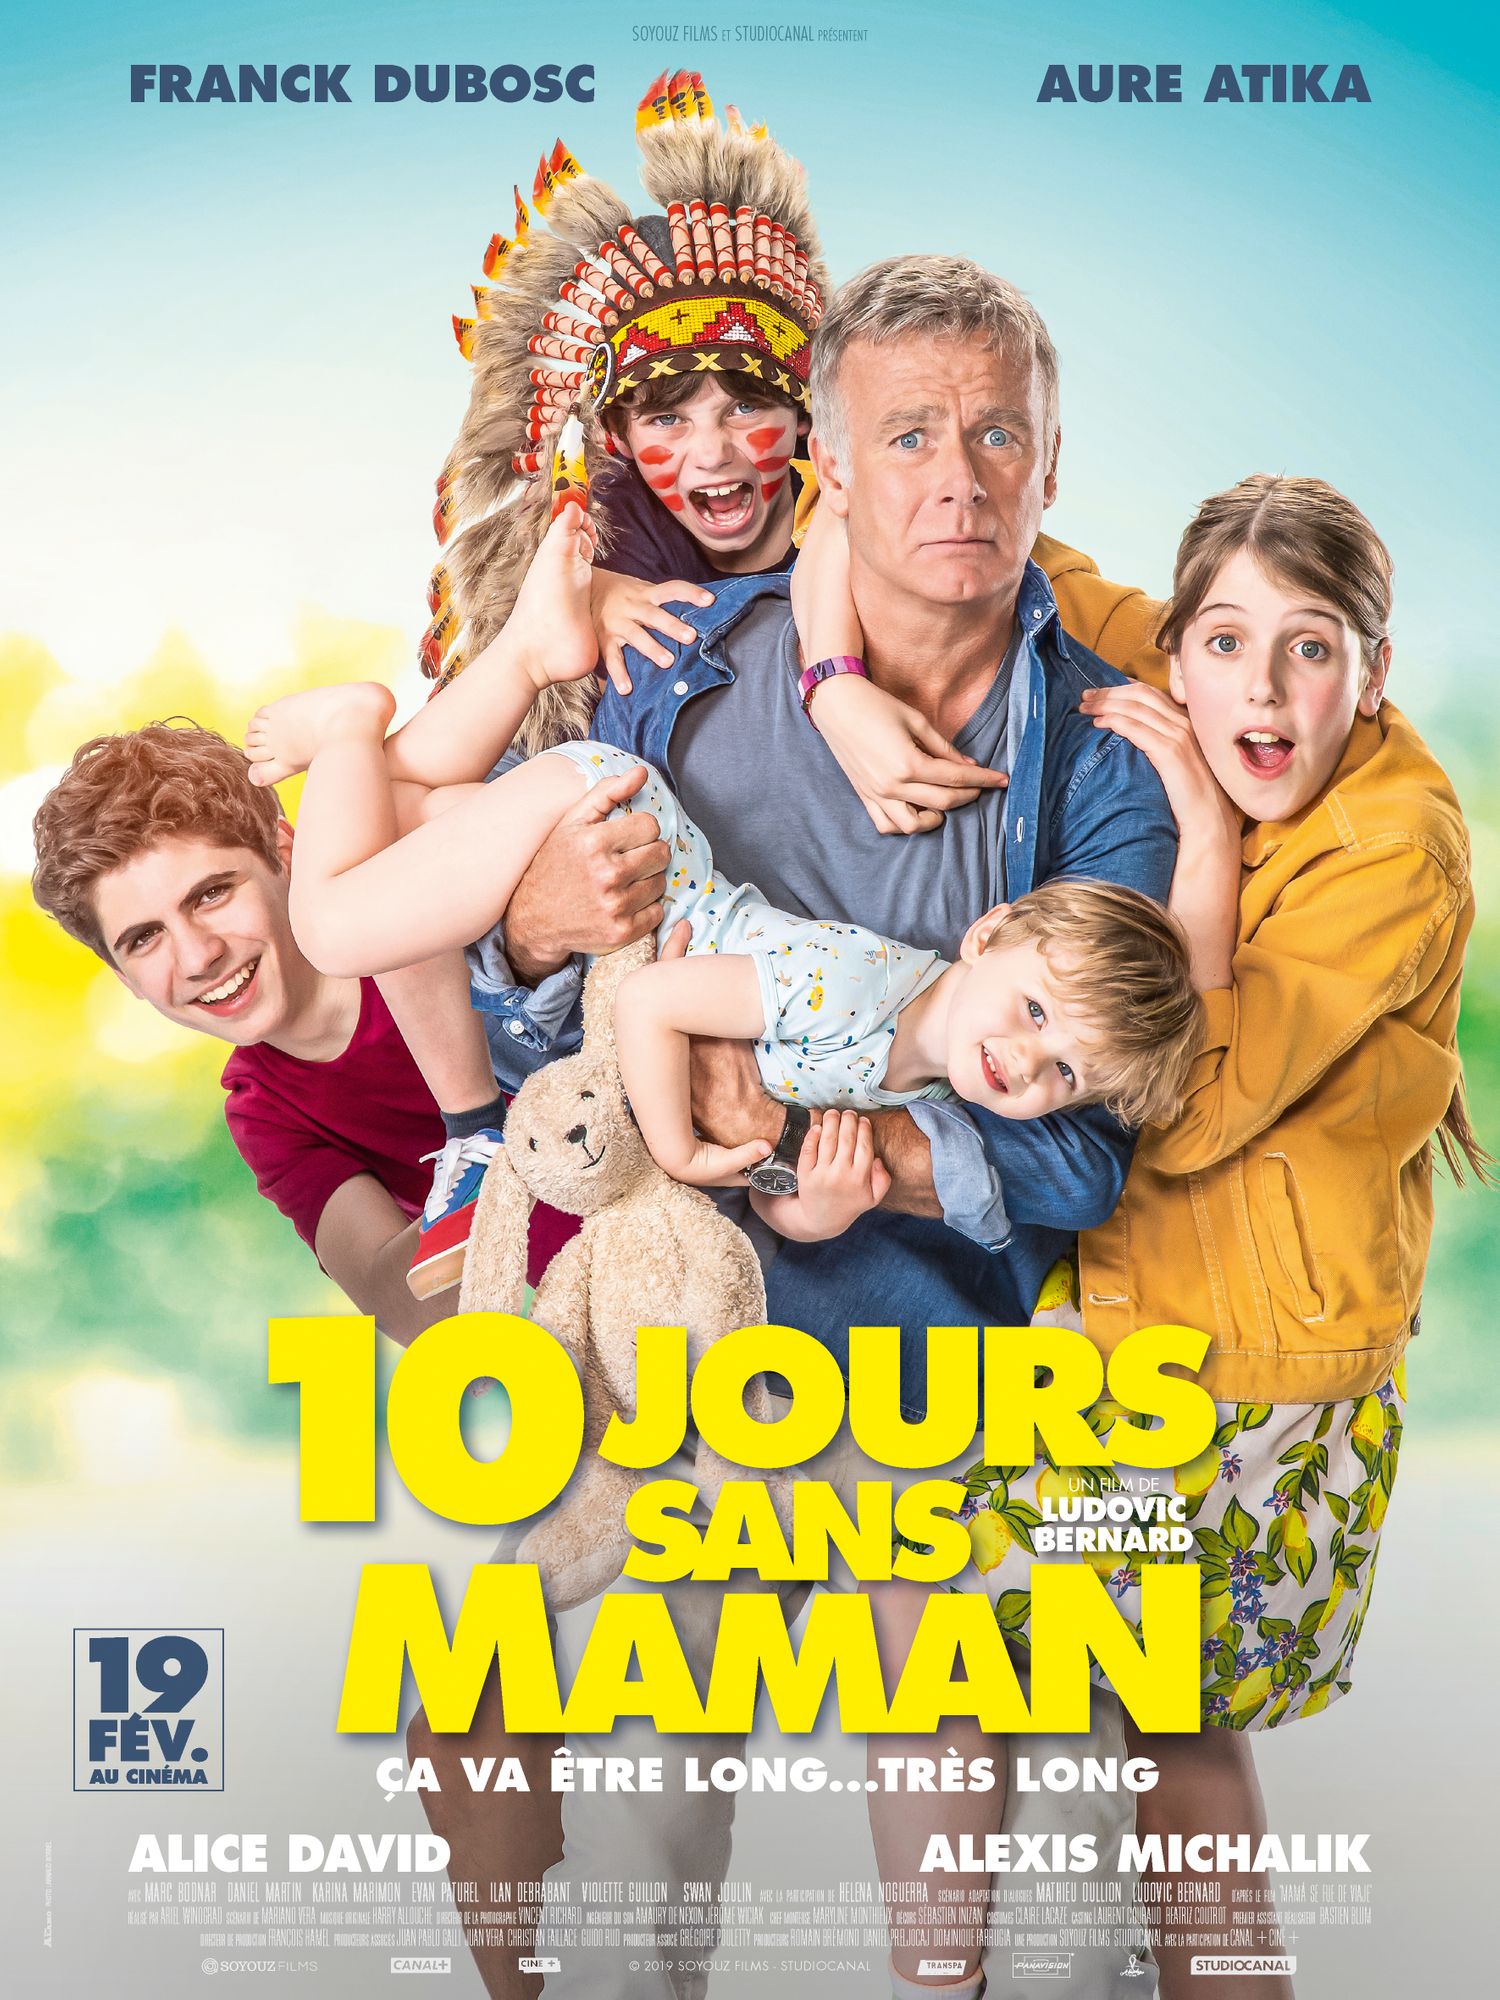 10 jours sans maman en DVD : 10 jours sans maman DVD - AlloCiné